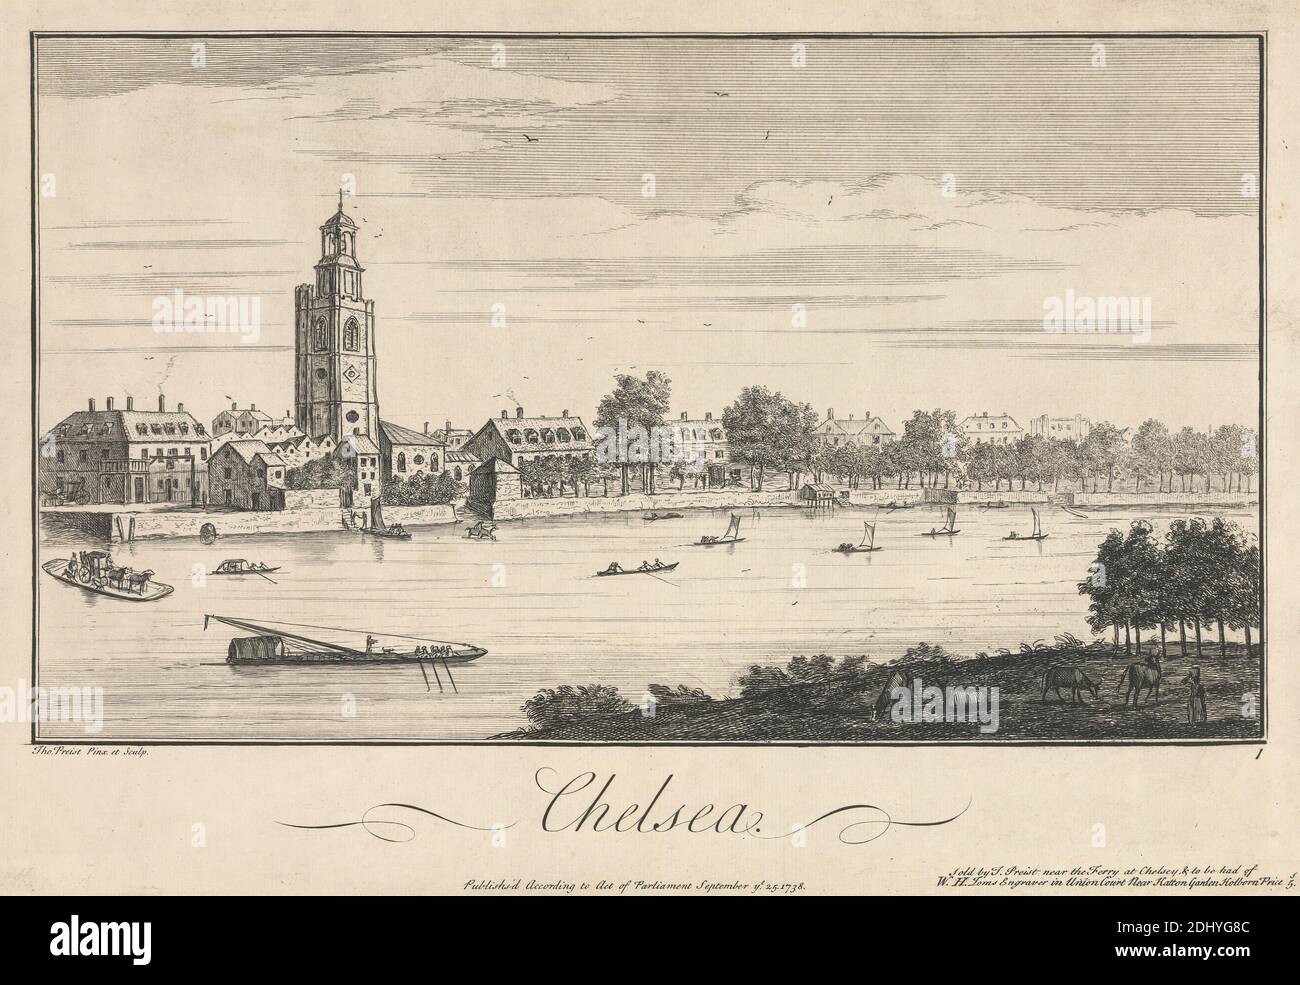 Chelsea, Thomas Preist, aktiv 1740-1750, britisch, nach Thomas Preist, aktiv 1740-1750, britisch, 1738, Blatt: 10 x 14 1/2 Zoll (25.4 x 36,8 cm Stockfoto